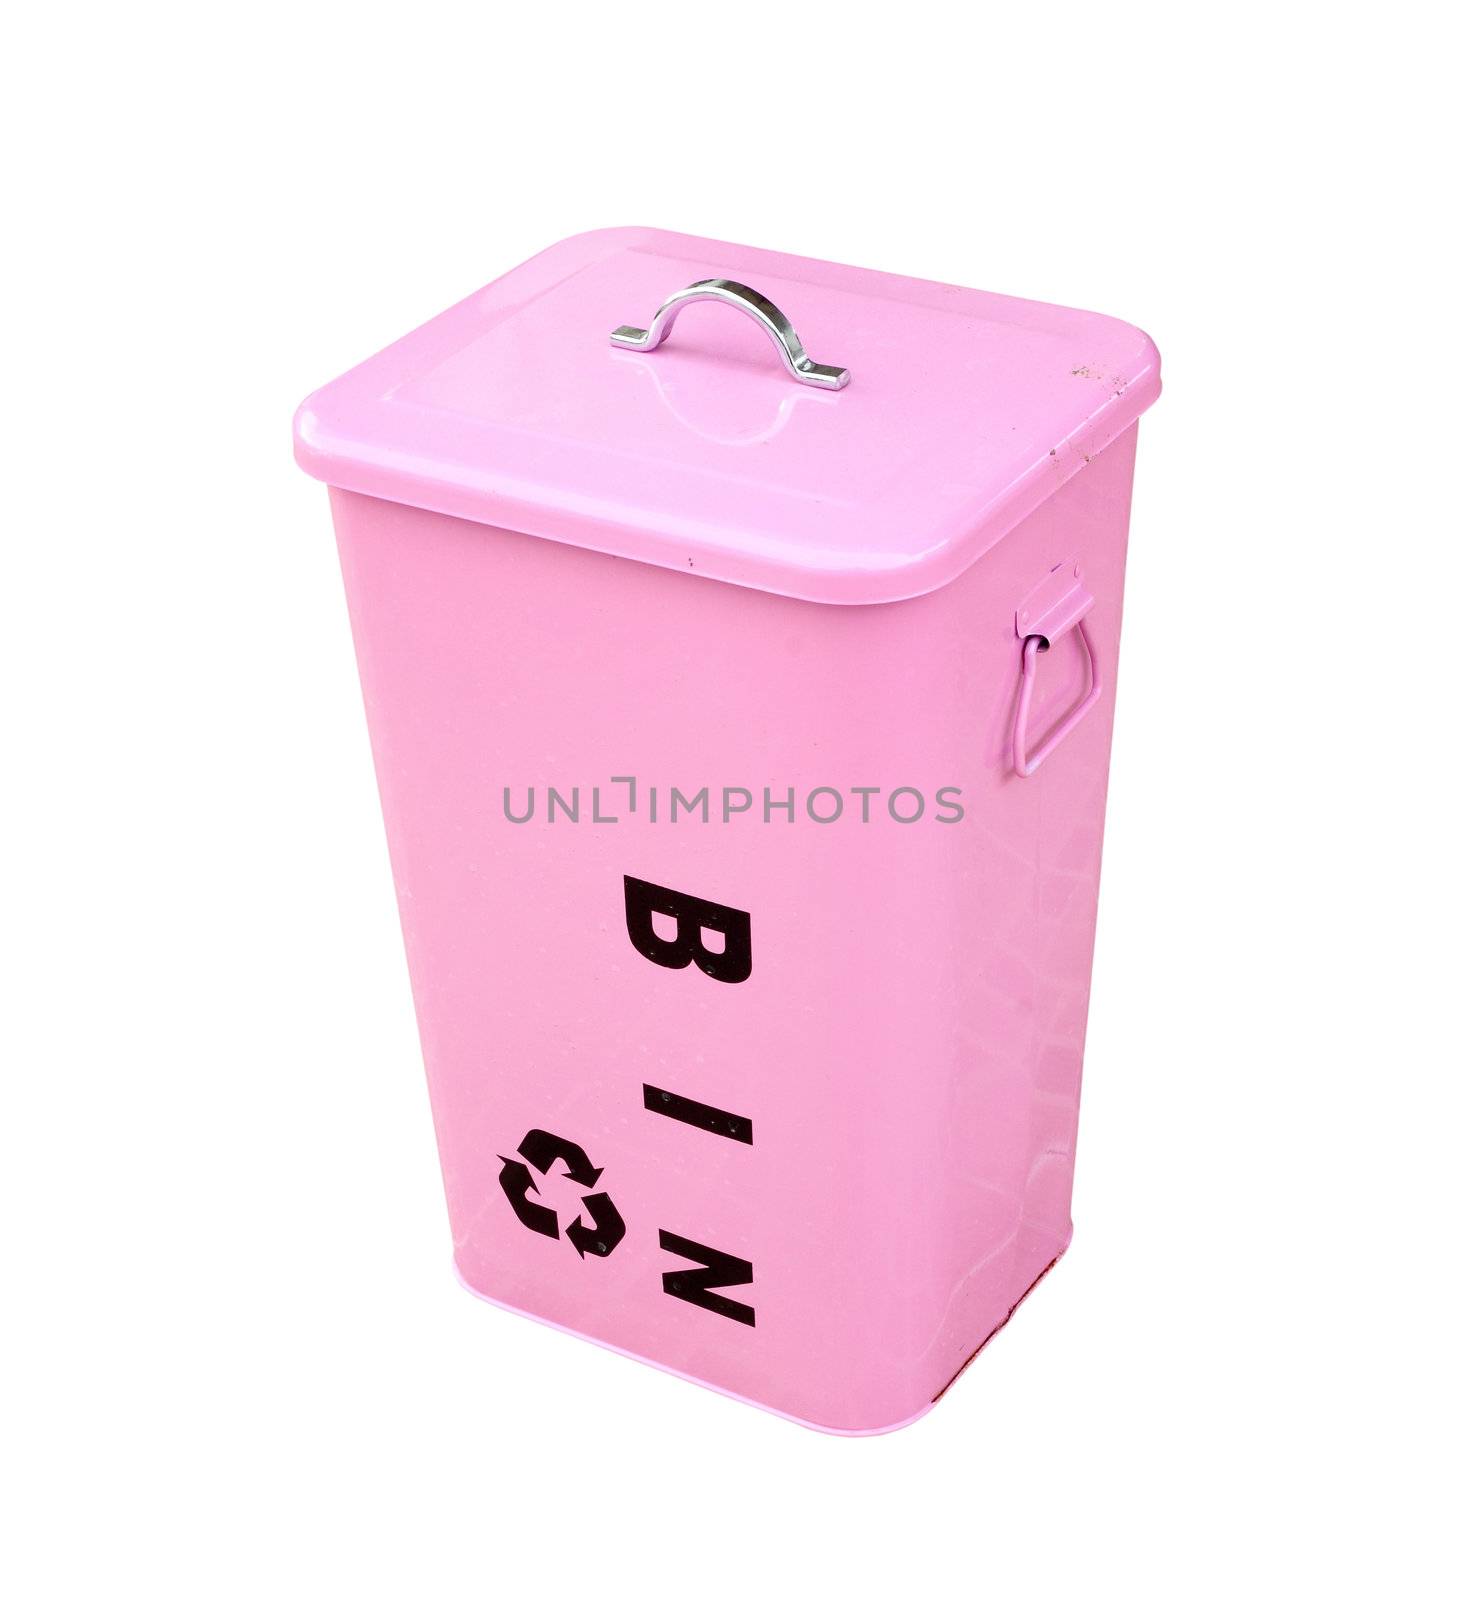 pink bin on white background